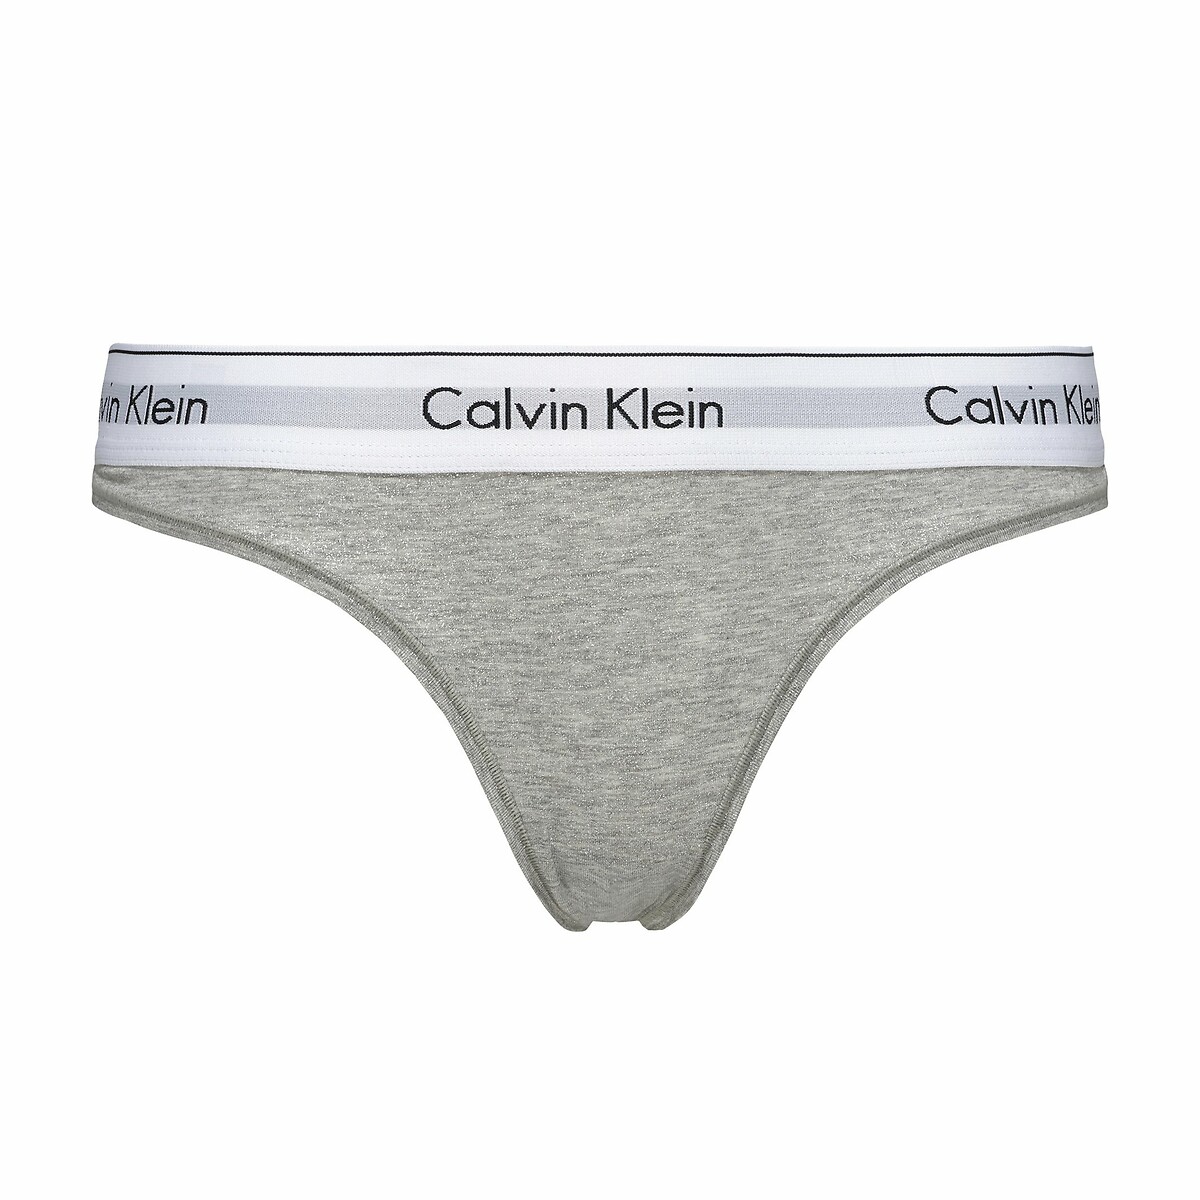 String modern | Redoute La cotton, Klein Underwear markenschriftzug Calvin